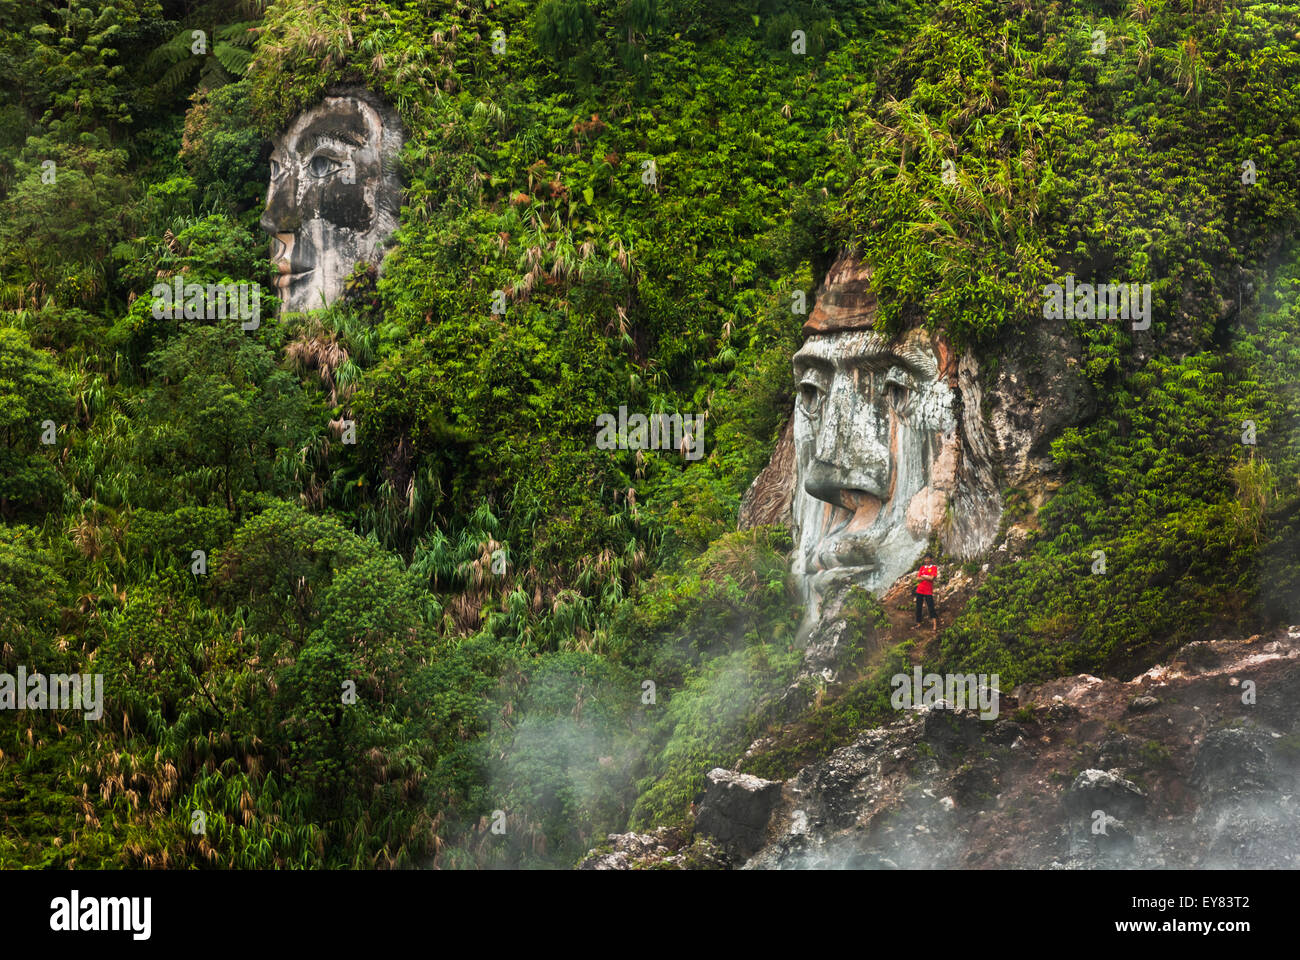 In Bukit Kasih, North Sulawesi, Indonesien, wird ein Besucher in der Nähe einer riesigen Gesichtsformation gesehen, die den Charakter von Toar (eine uralte Figur) illustriert. Stockfoto